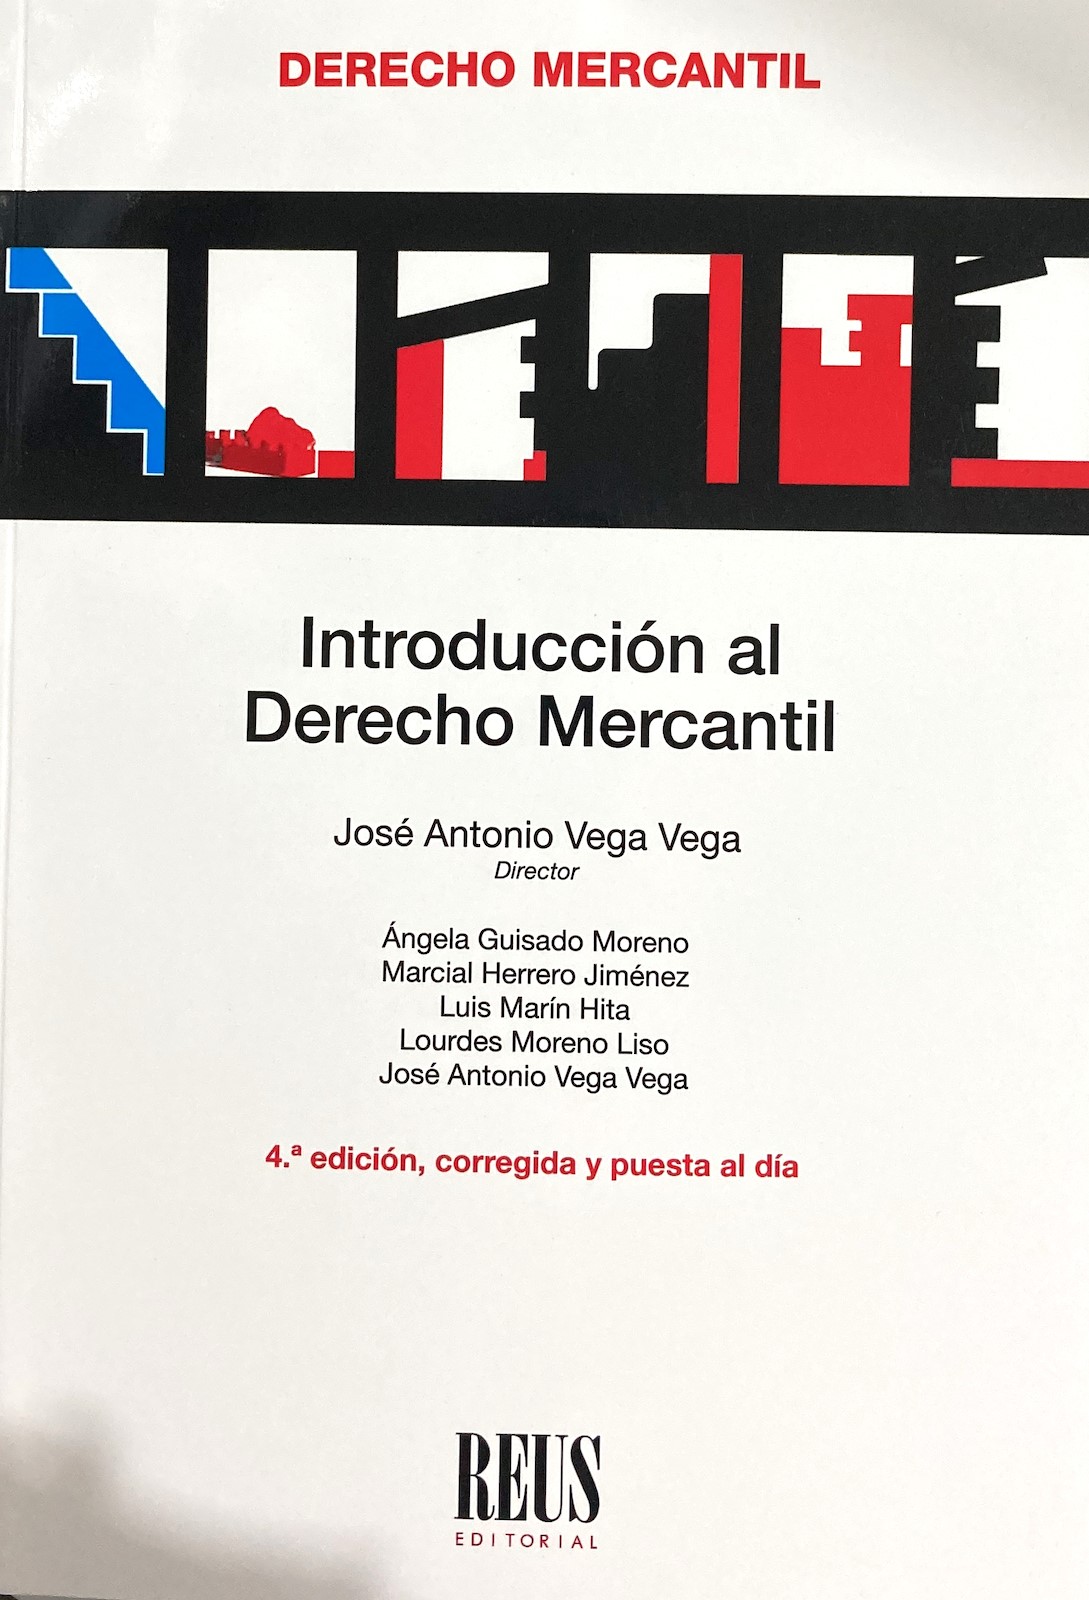 Imagen de portada del libro Introducción al Derecho Mercantil